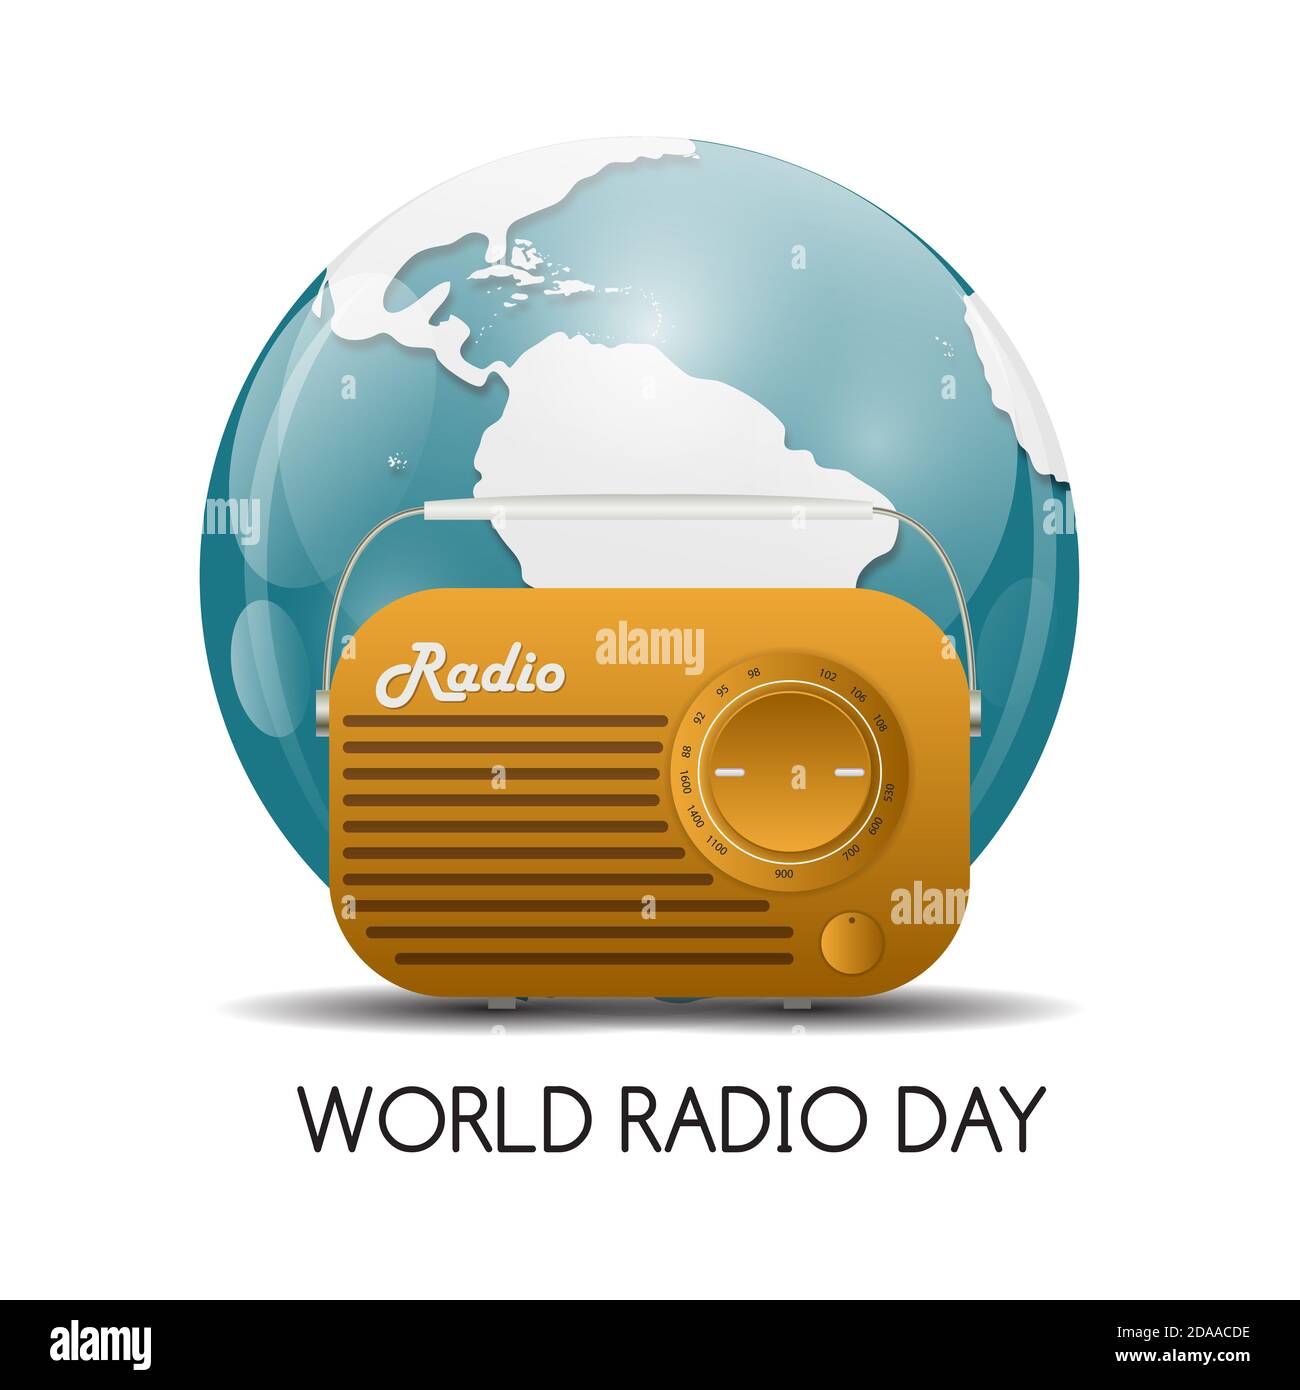 World Radio Day Background Illustration Stock Photo - Alamy